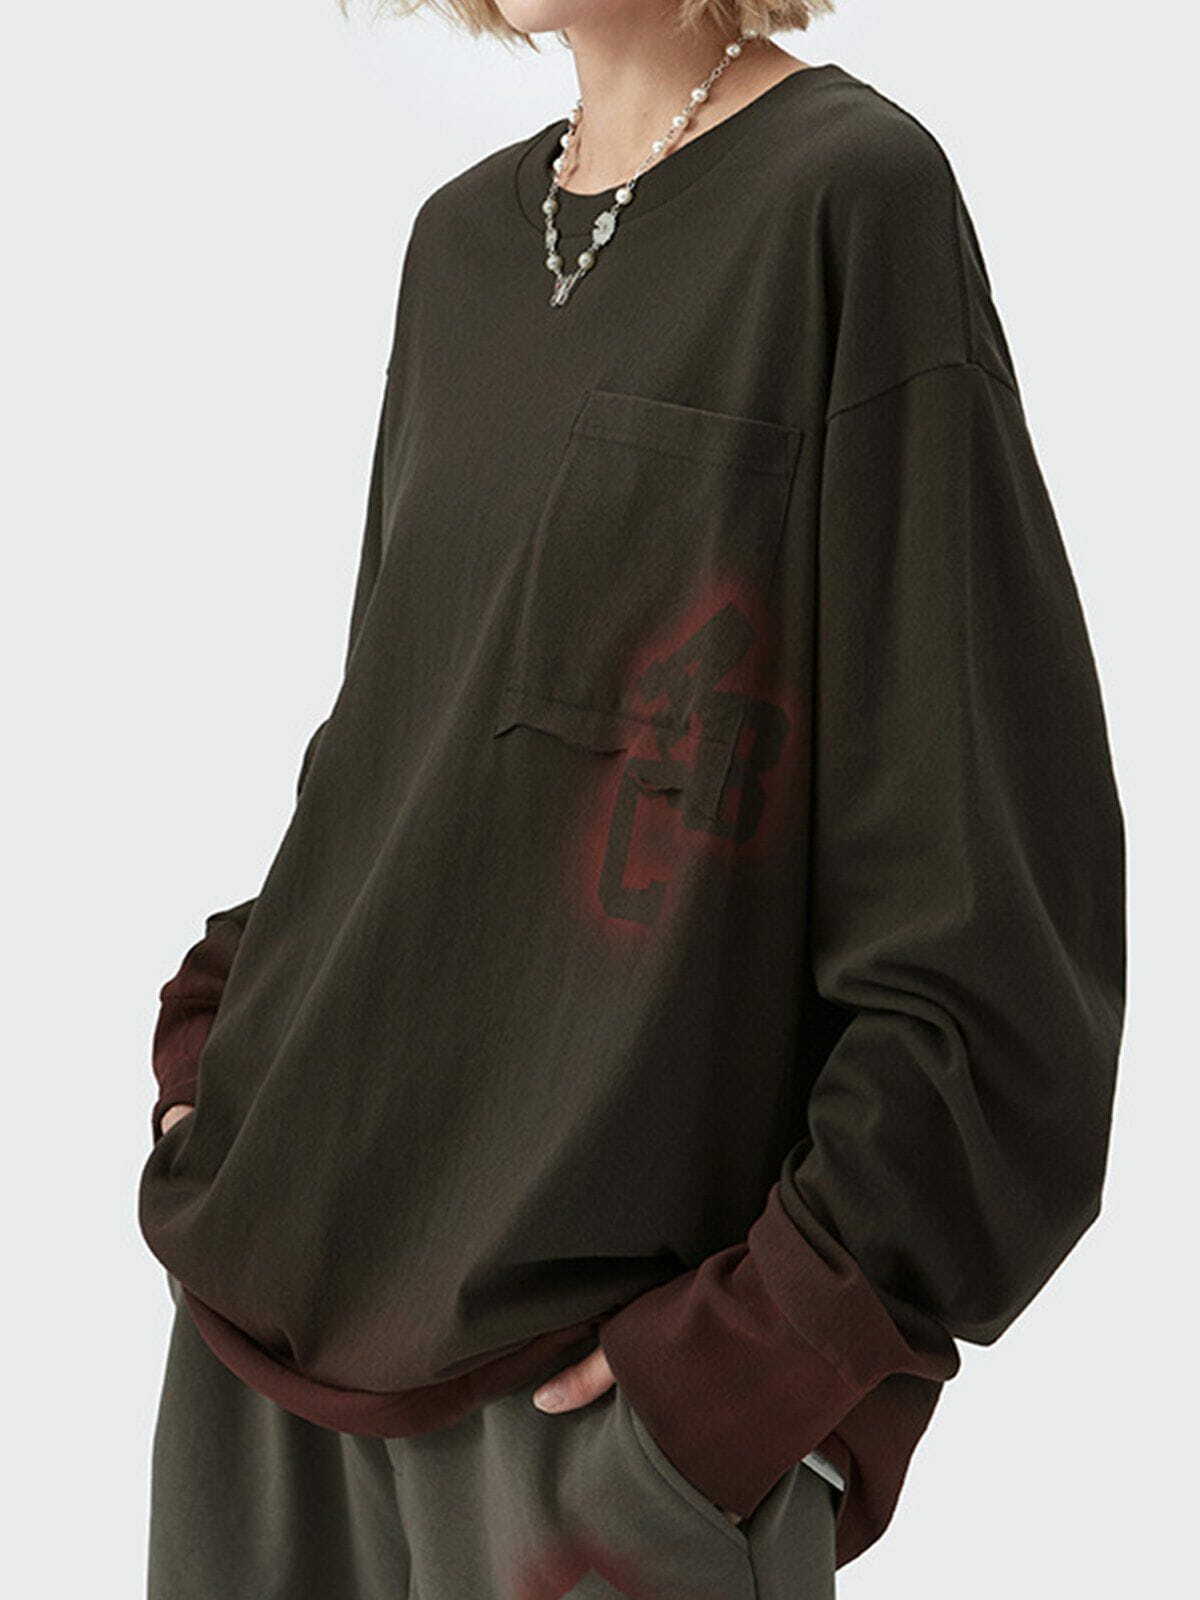 blooming gradient sweatshirt edgy streetwear essential 2453